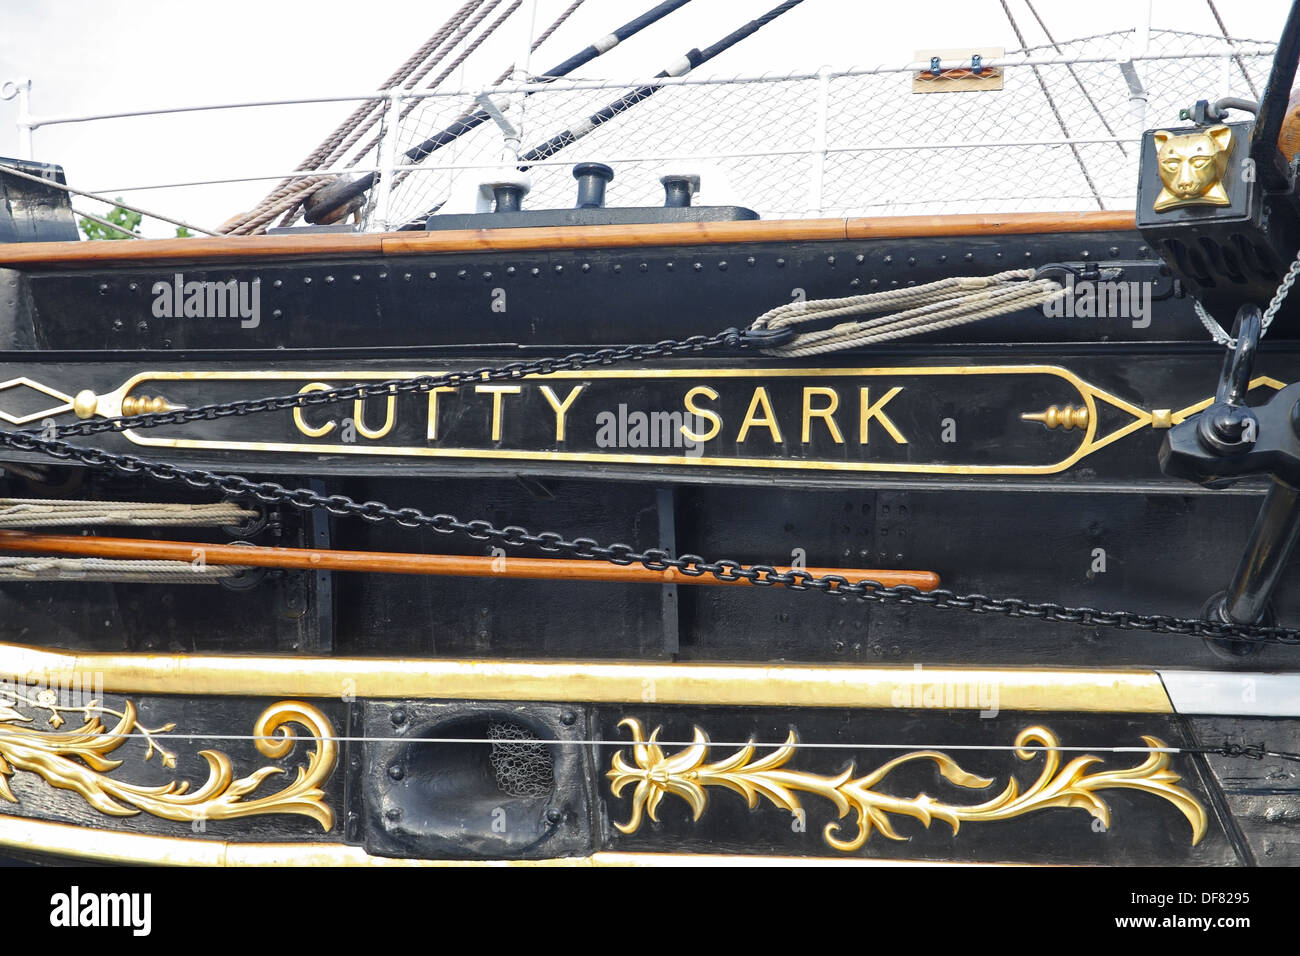 Gros plan de la plaque du constructeur de la célèbre navire, le Cutty Sark, à Maritime Greenwich, London, England, UK Banque D'Images